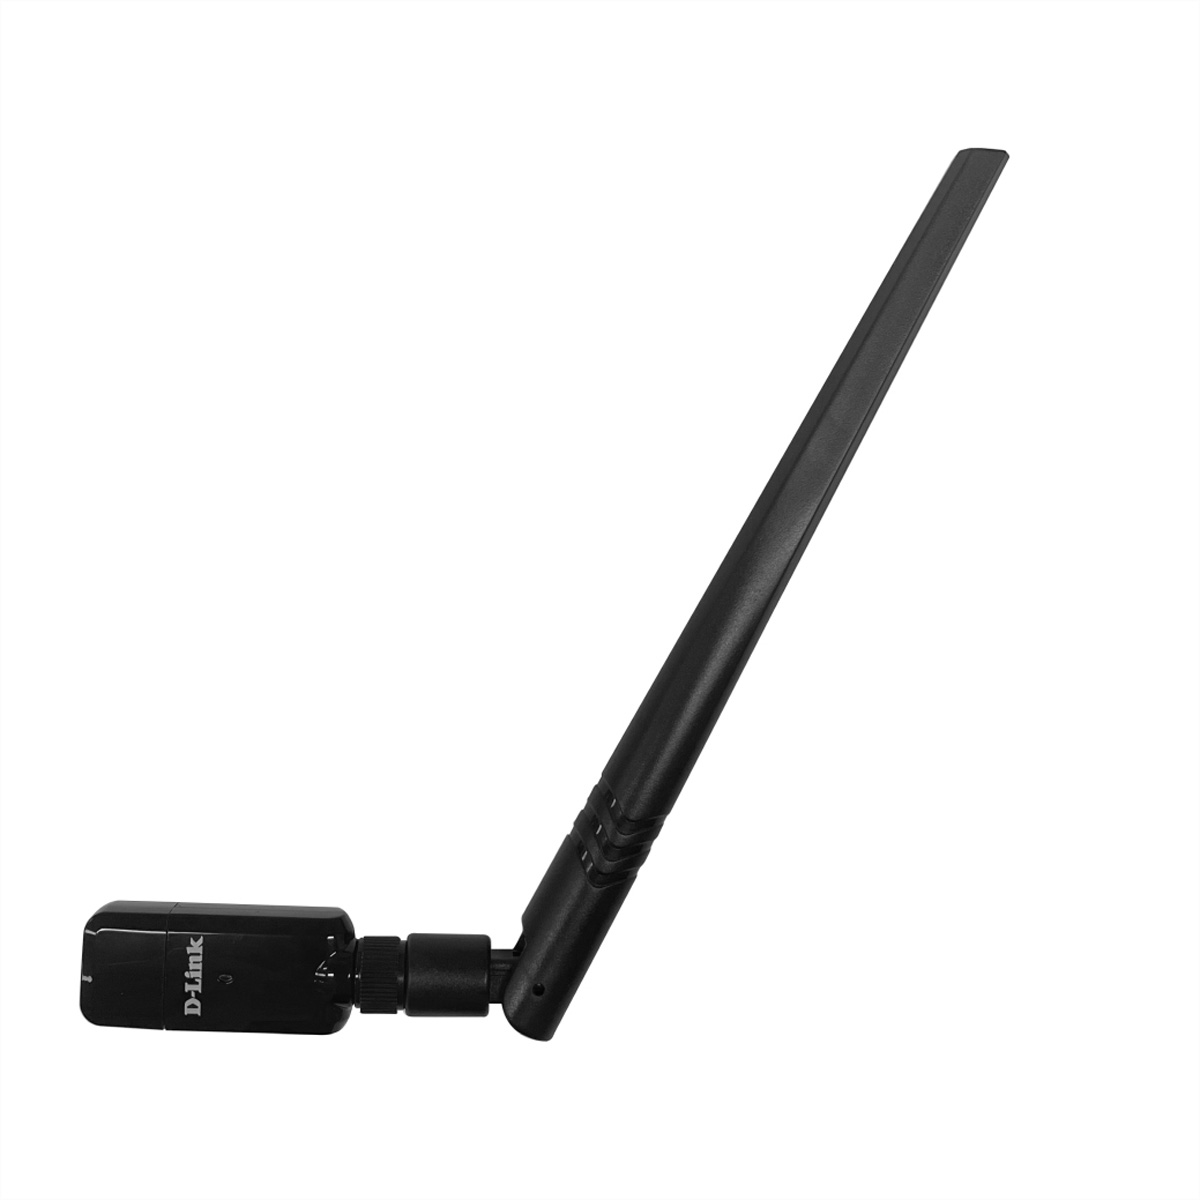 D-Link DWA-185 Wi-Fi USB Adapter AC1300 MU-MIMO